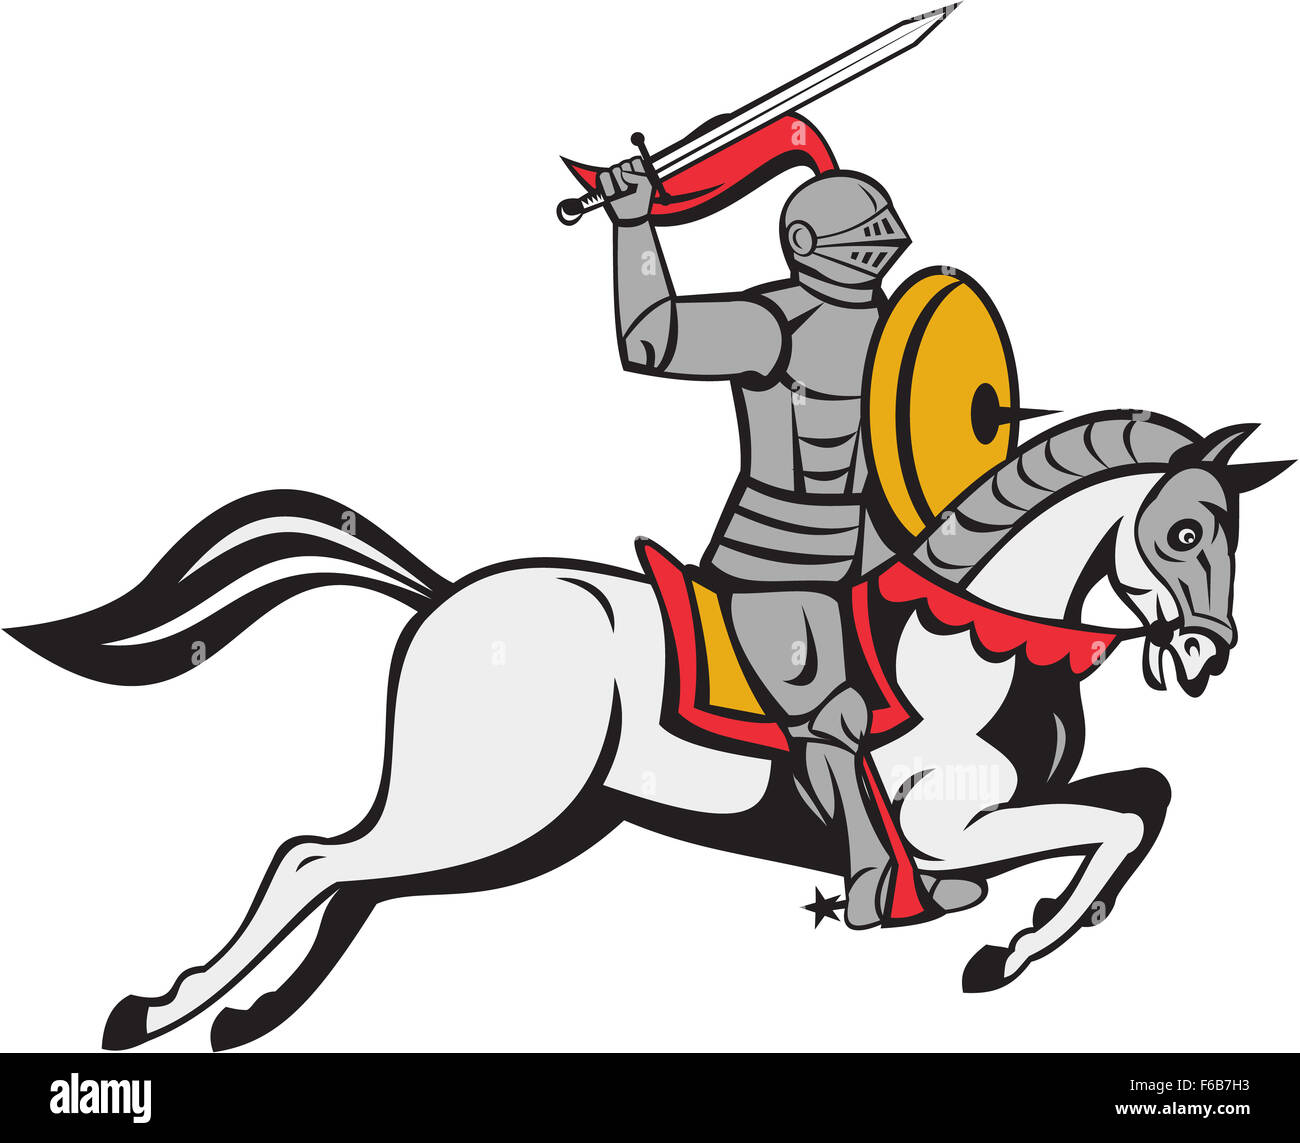 Cartoon-Stil-Abbildung von einem Ritter in voller Rüstung mit Schwert einerseits über den Kopf und Schild auf der anderen Seite Reiten Pferd Reittier angreifen betrachtet von der Seite setzen auf weißem Hintergrund isoliert. Stockfoto